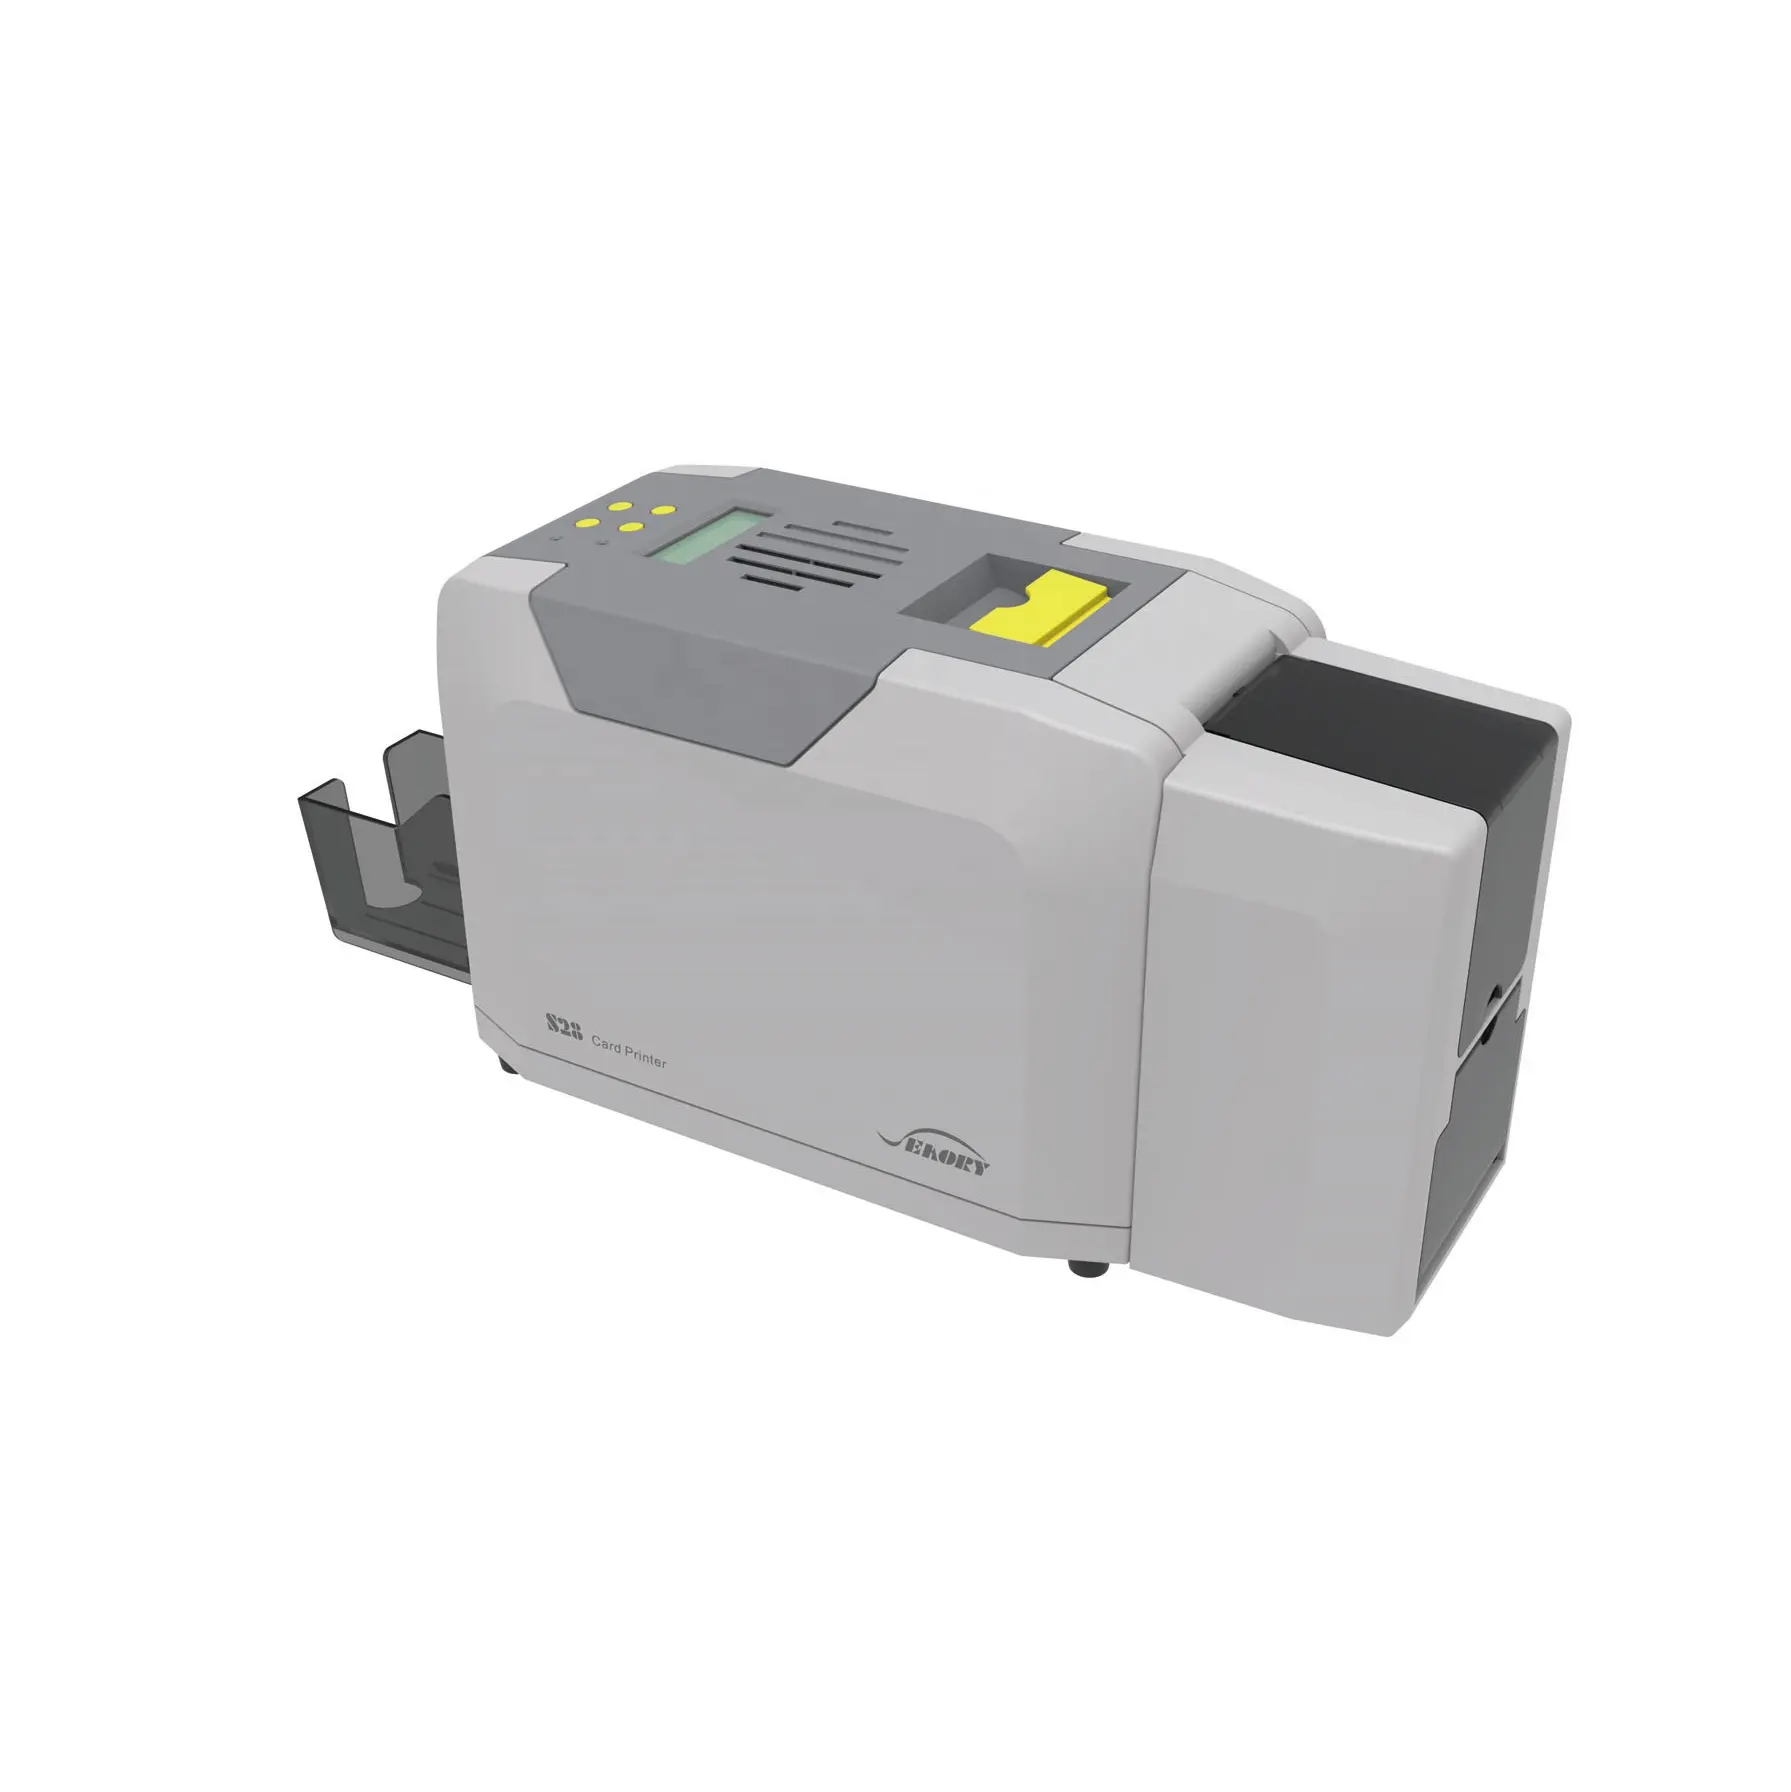 ברזולוציה גבוהה Savory s28 אוטומטי מדפסת כרטיס pvc דו צדדי אוטומטי עבור הדפסה צבעונית